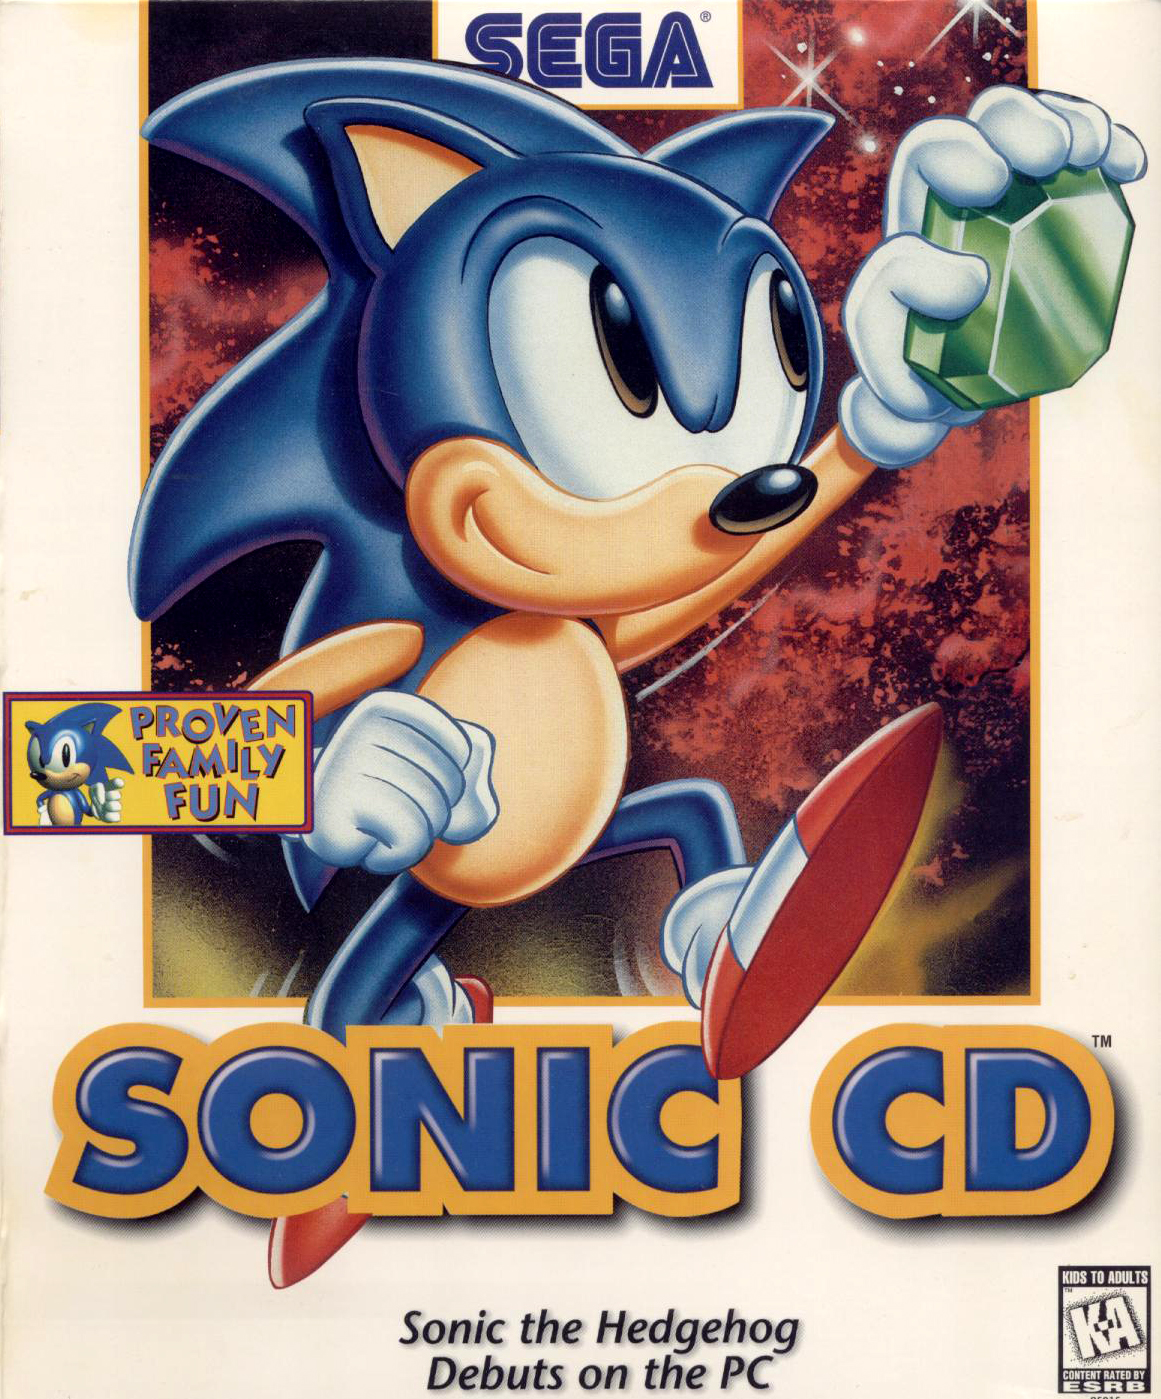 Jogo Sonic Cd Computador Vintage Windows 95 Sega Antigo, Jogo de  Computador Sega Usado 87171043